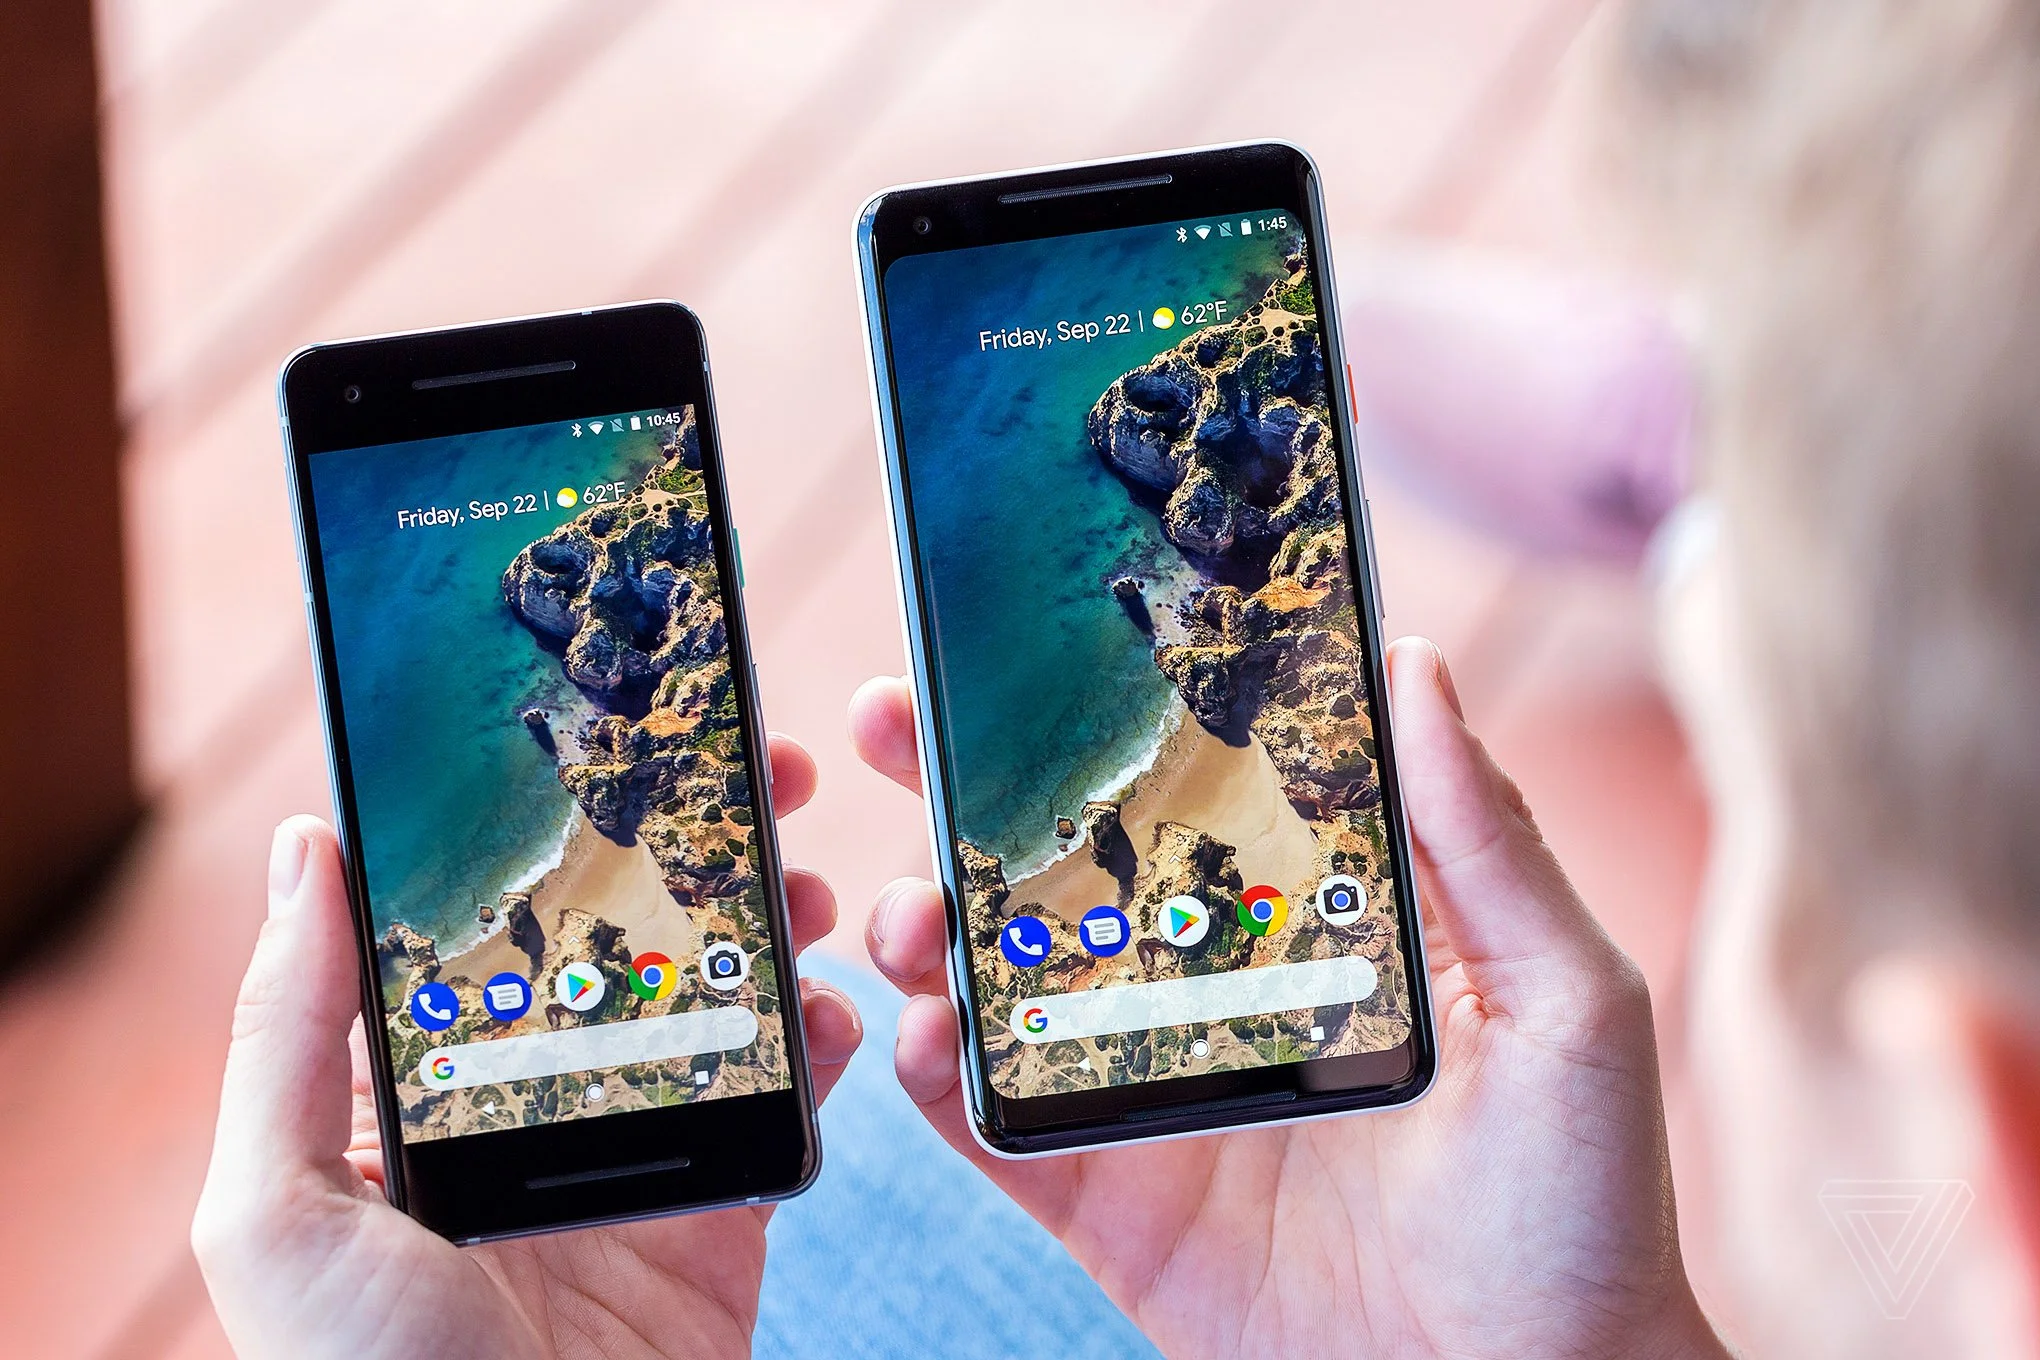 ​4 октября компания Google провела свою презентацию, на которой представила свои новые смартфоны – Google Pixel 2, Pixel 2 XL и многое другое. Давайте разбираться, действительно ли новые смартфоны способны завоевать рынок или же у них есть весомые недостатки?